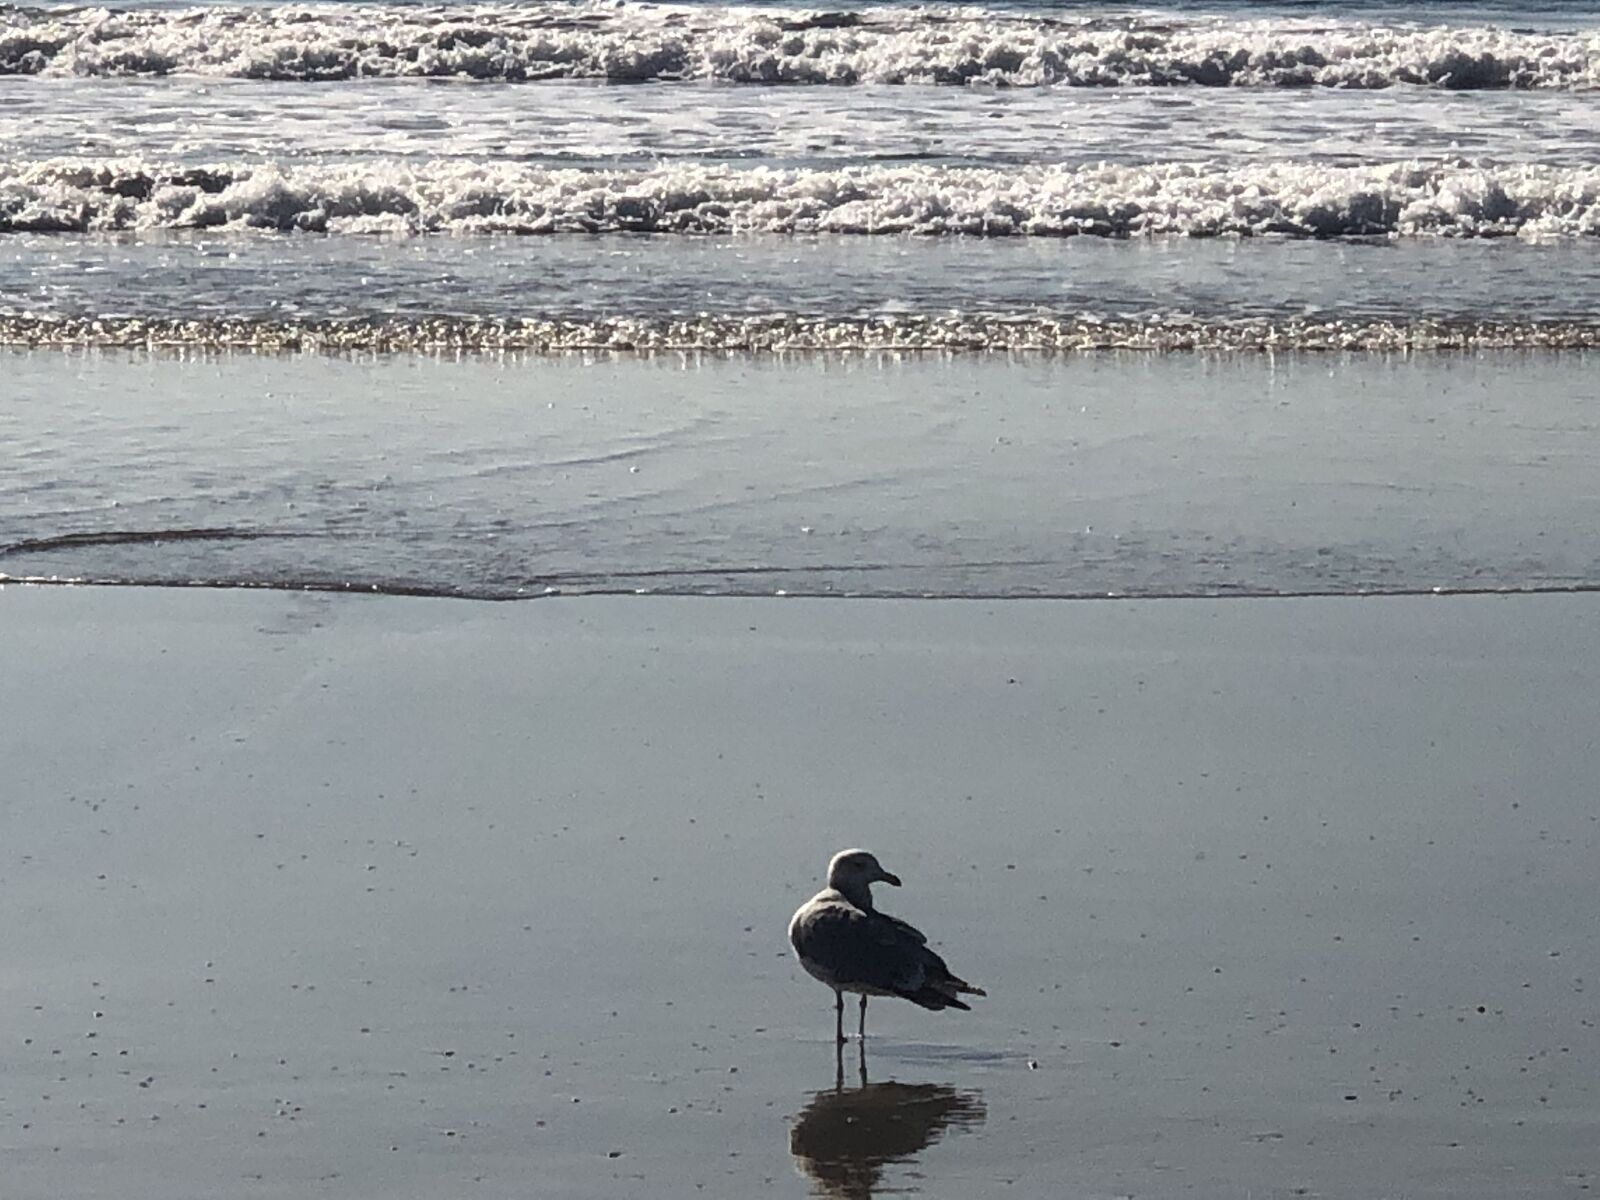 Apple iPhone X sample photo. Seagull, beach, ocean photography